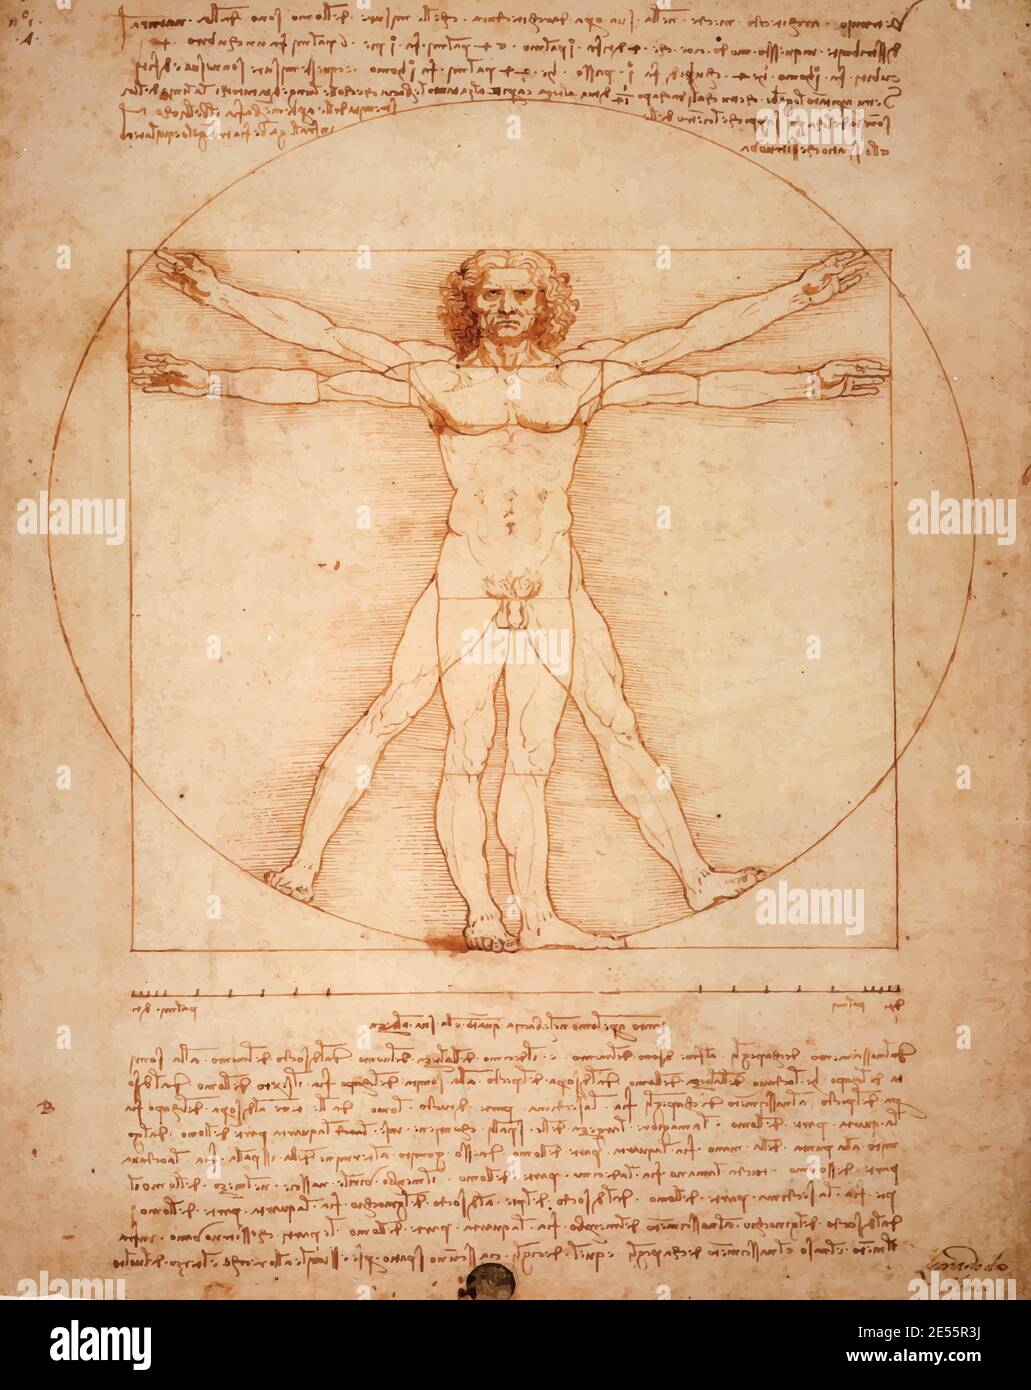 L'homme vitruvien de Léonard de Vinci, Uomo Vitruviano, illustré dans les couleurs sépia Banque D'Images